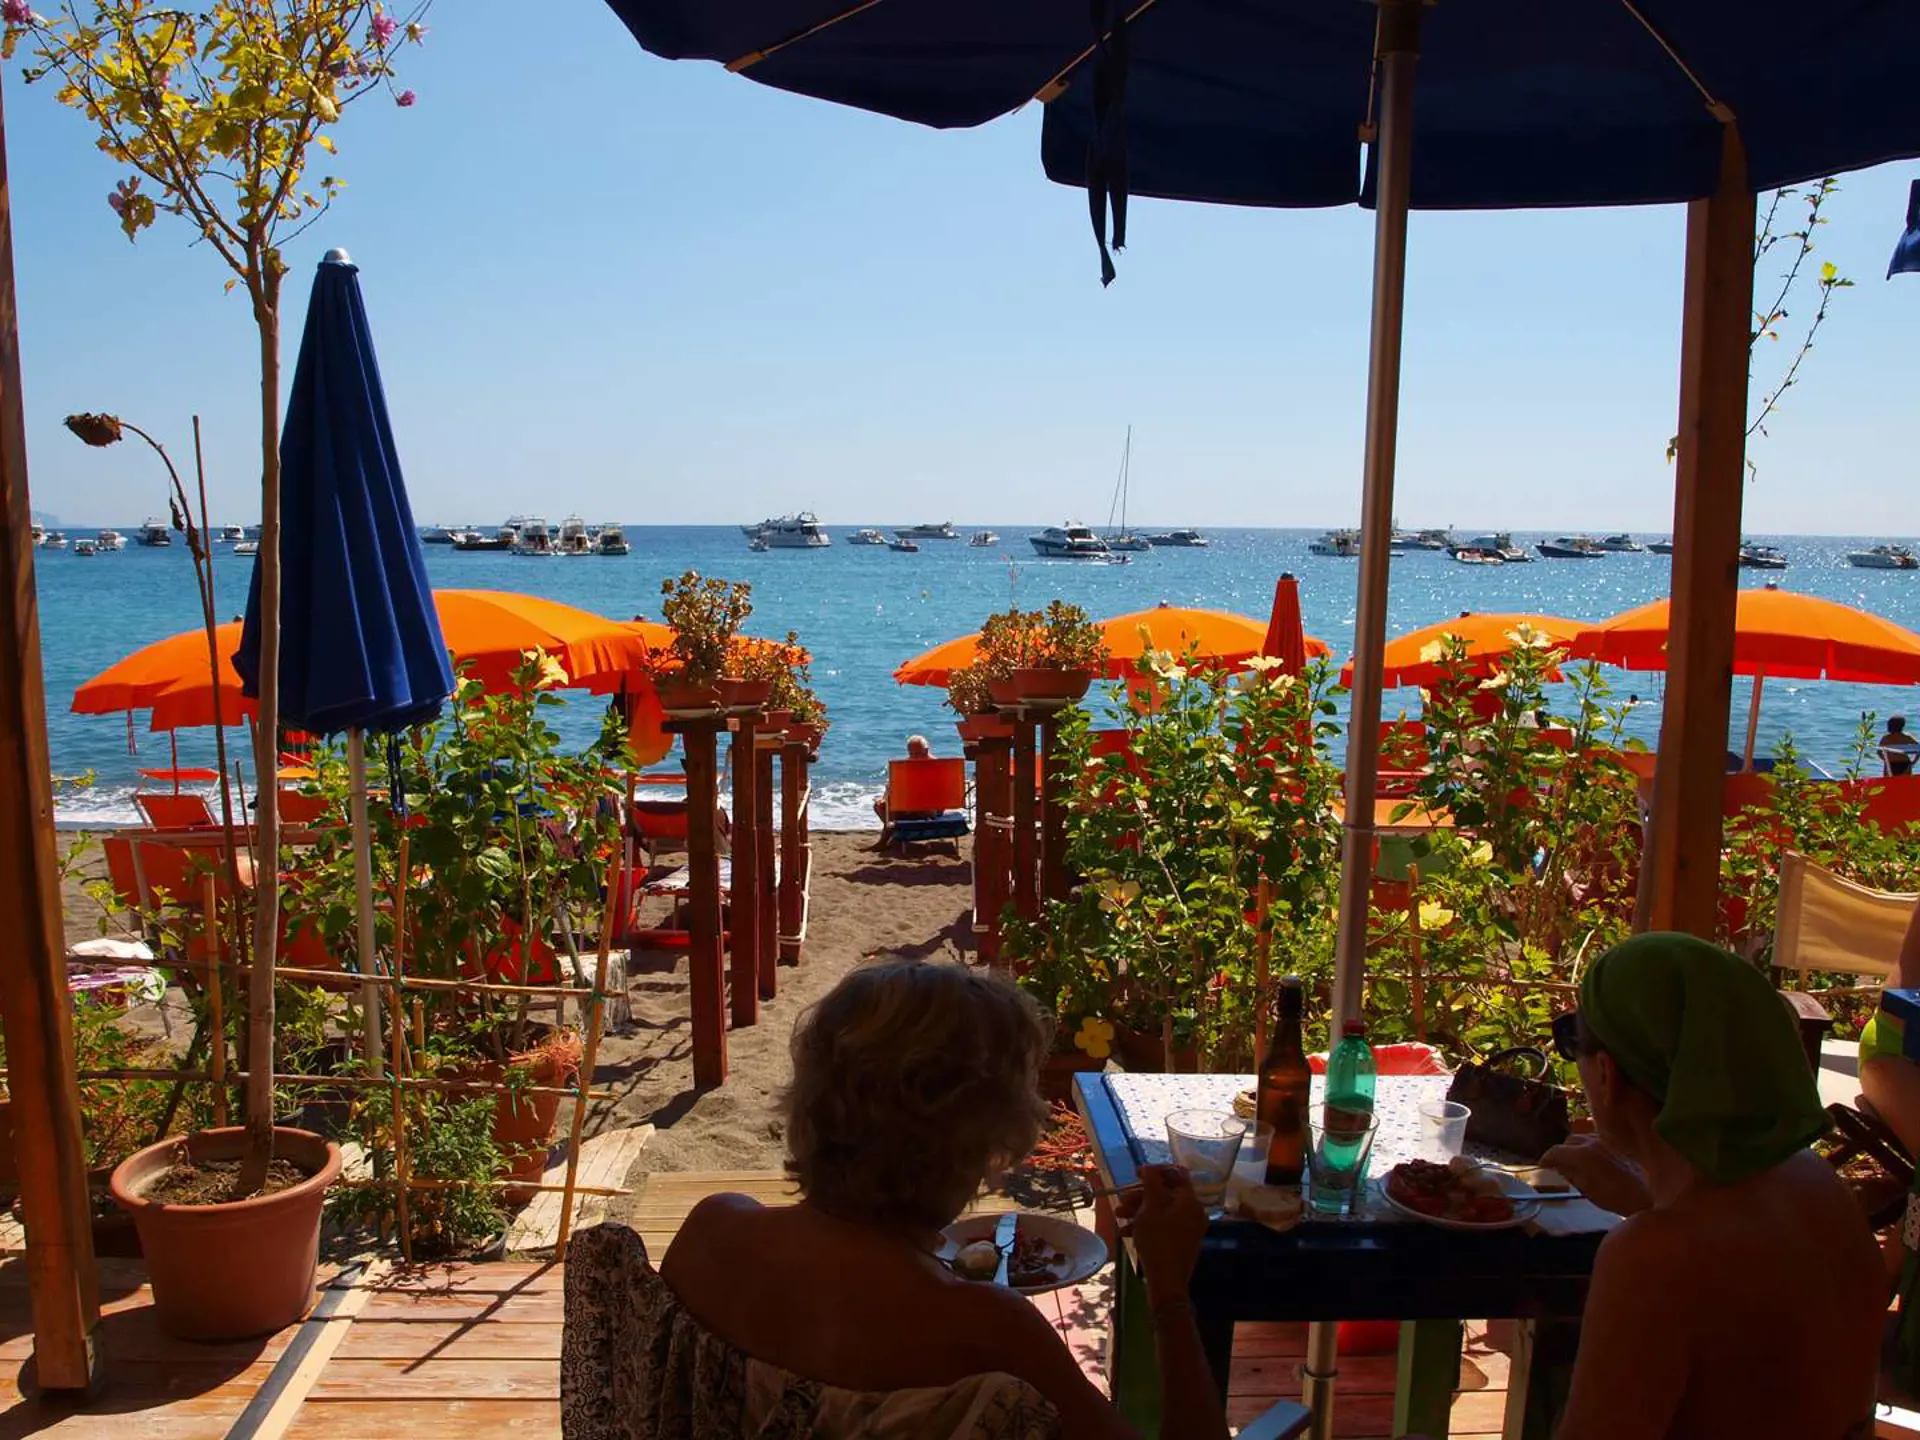 Hotel Villa Maria har en beach Club, hvor I kan leje solsenge og parasoller